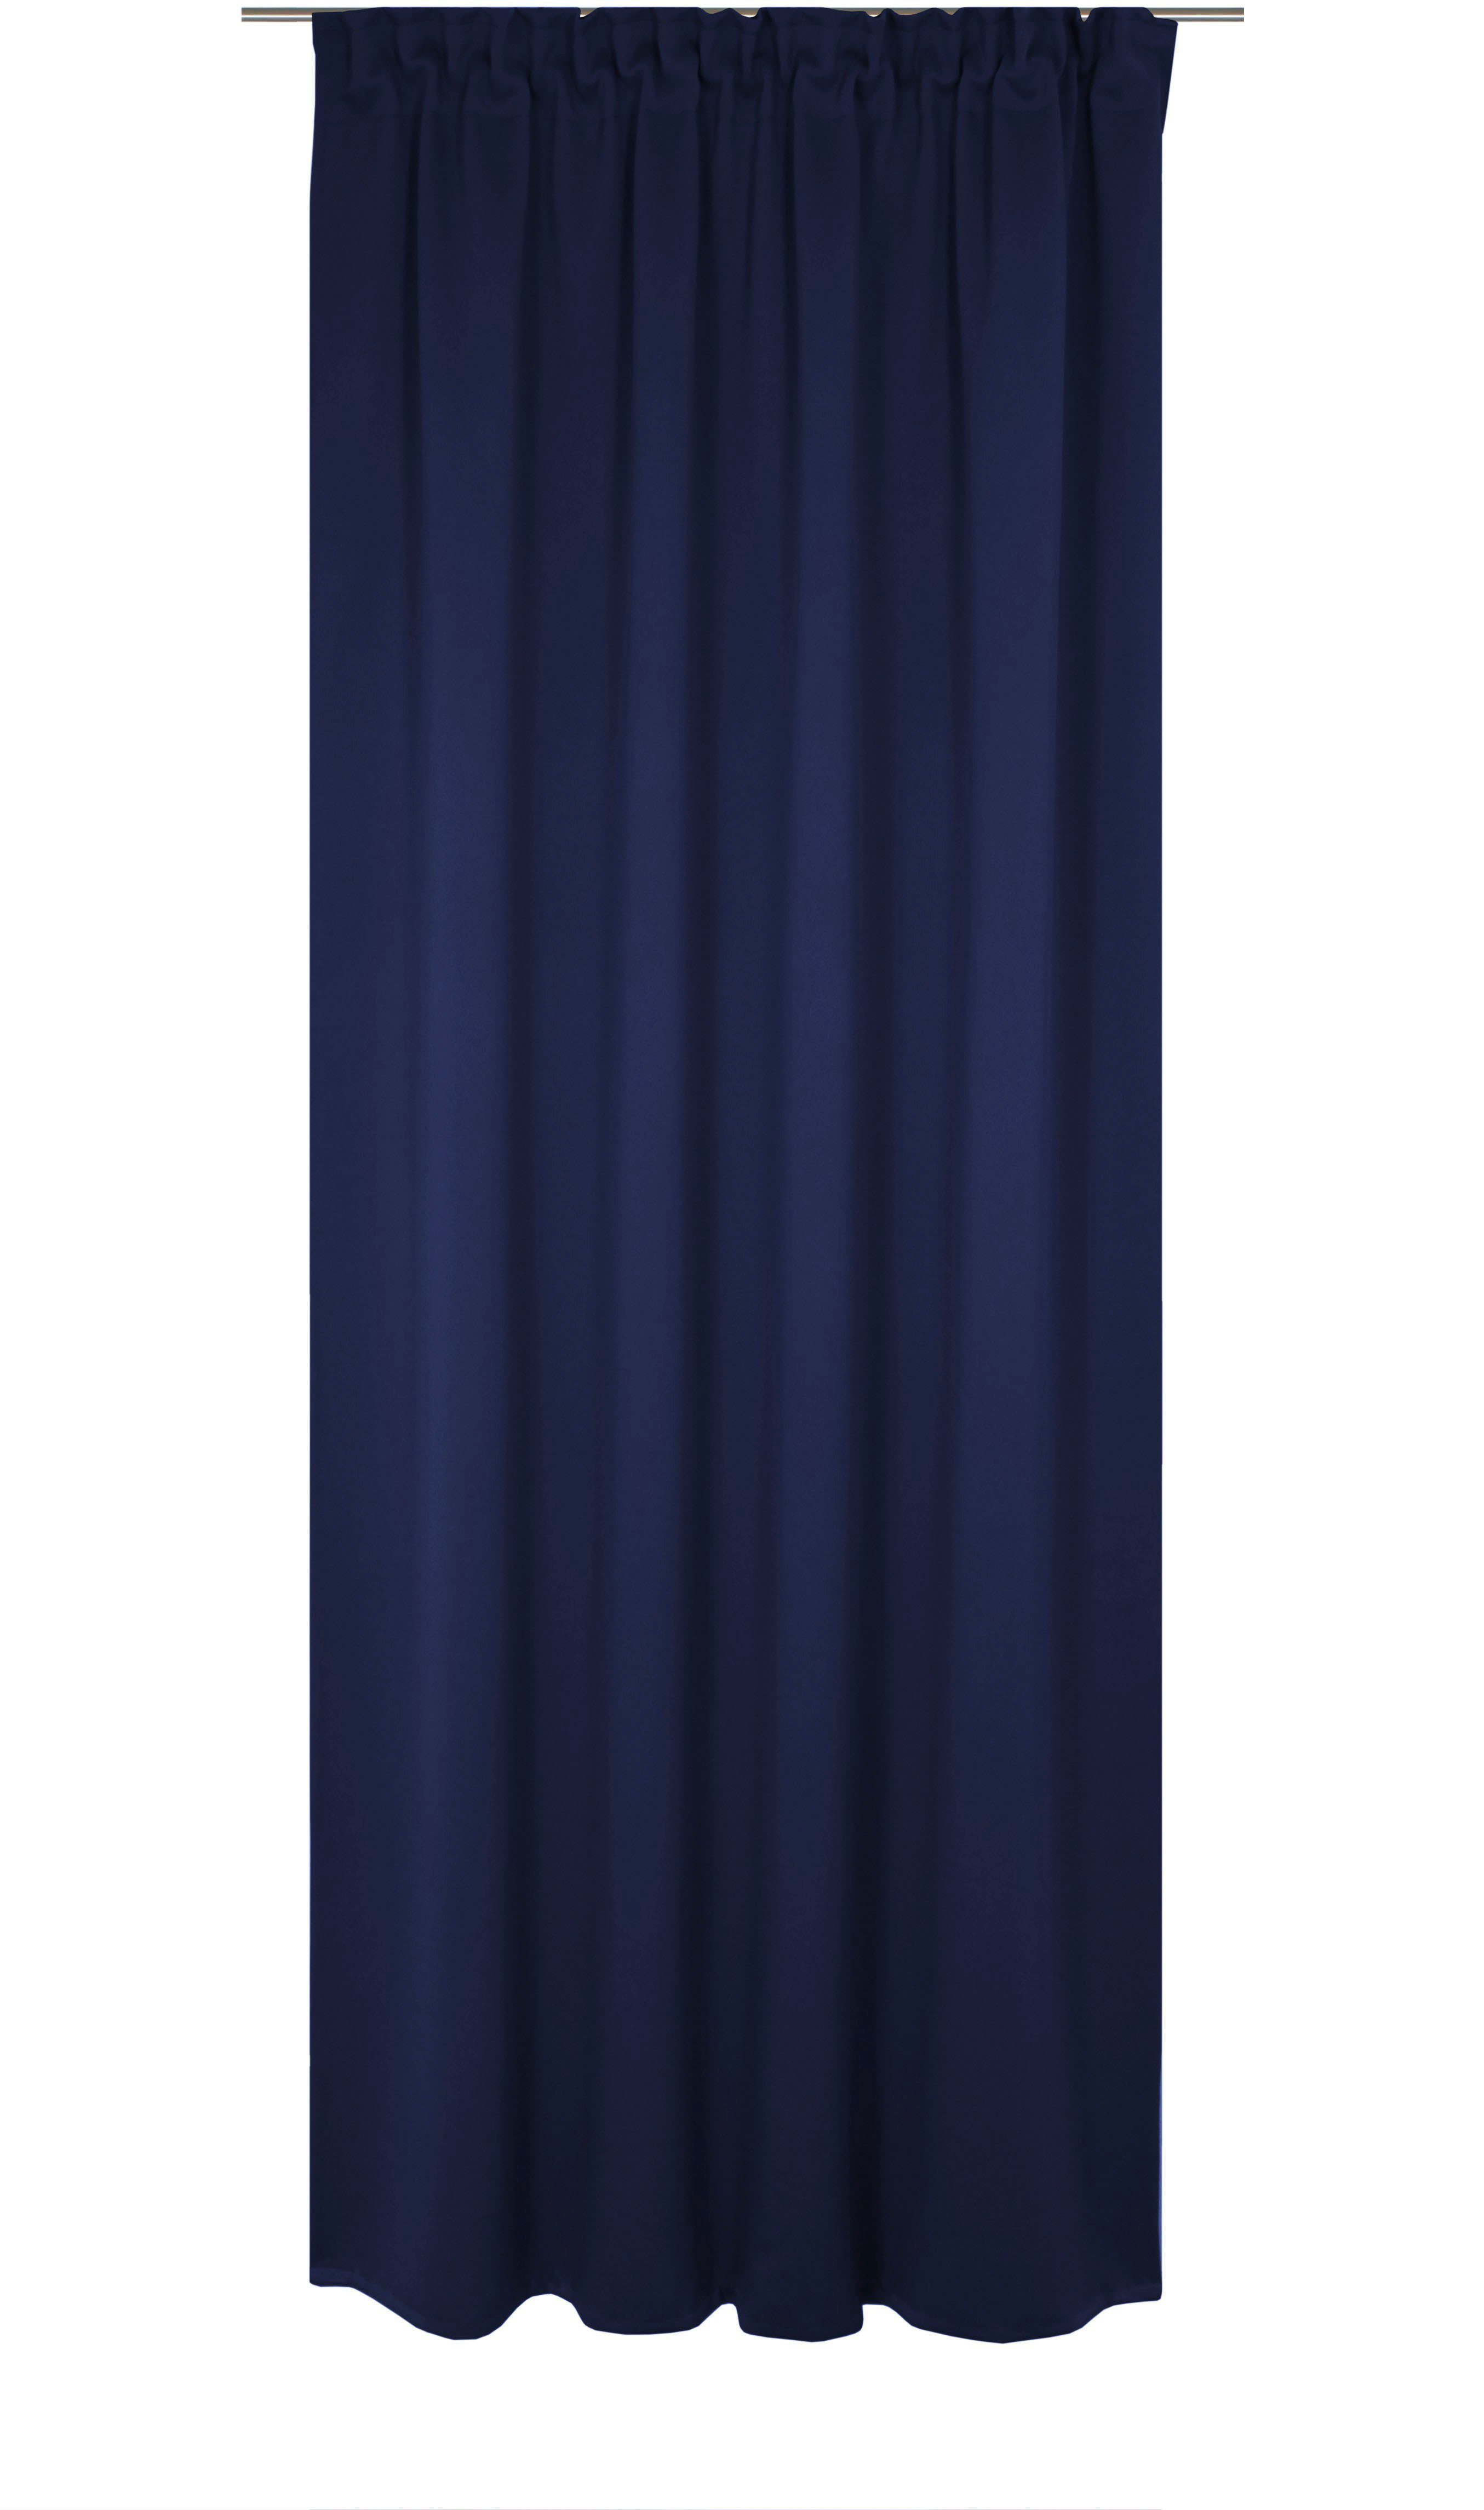 Vorhang Newbury, Wirth, Multifunktionsband (1 St), blickdicht, nach Maß nachtblau